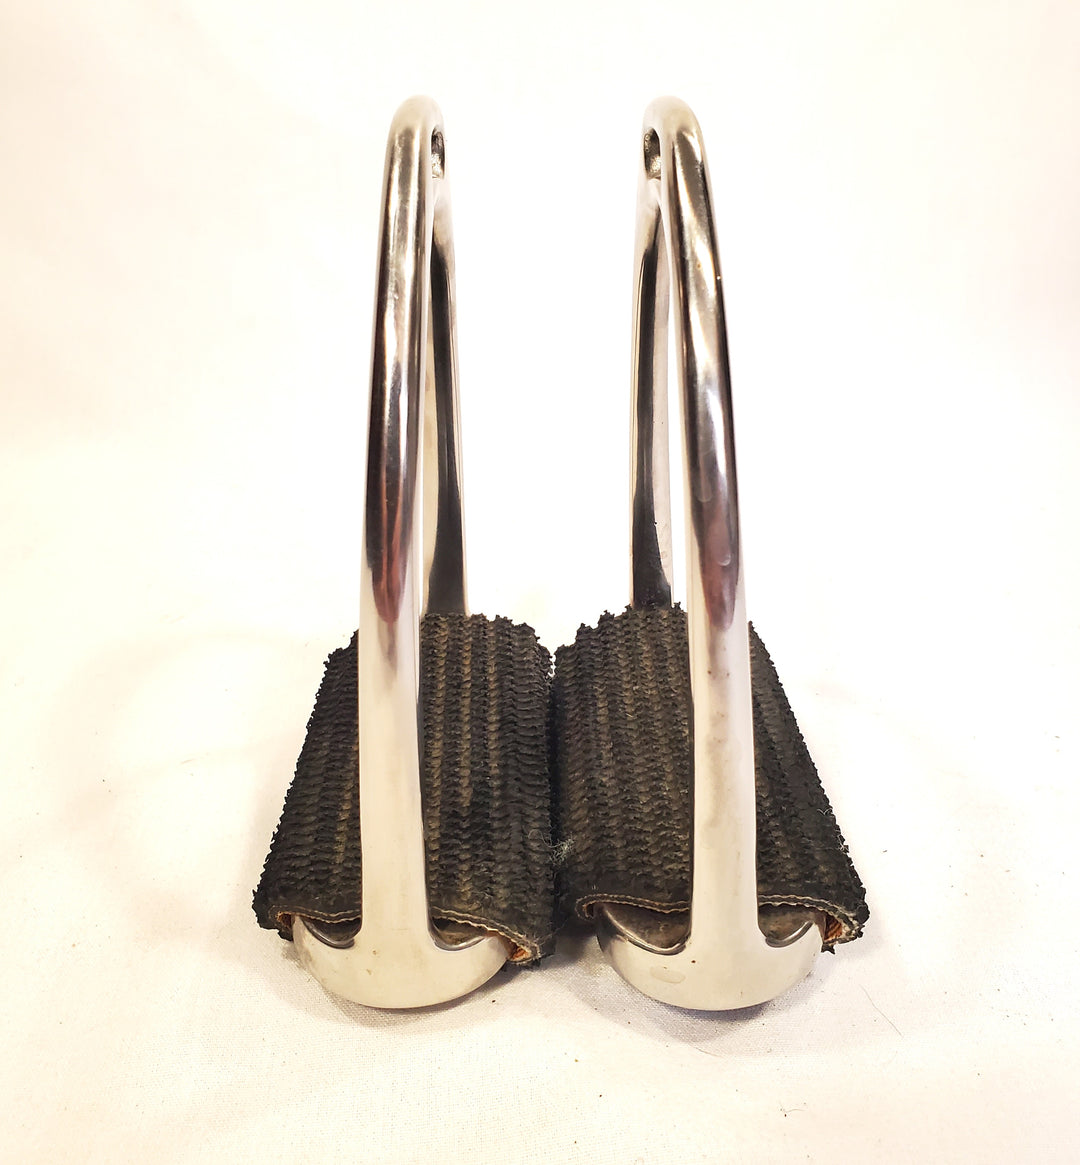 Fillis Stirrups with Comfort Pads - 4.5"